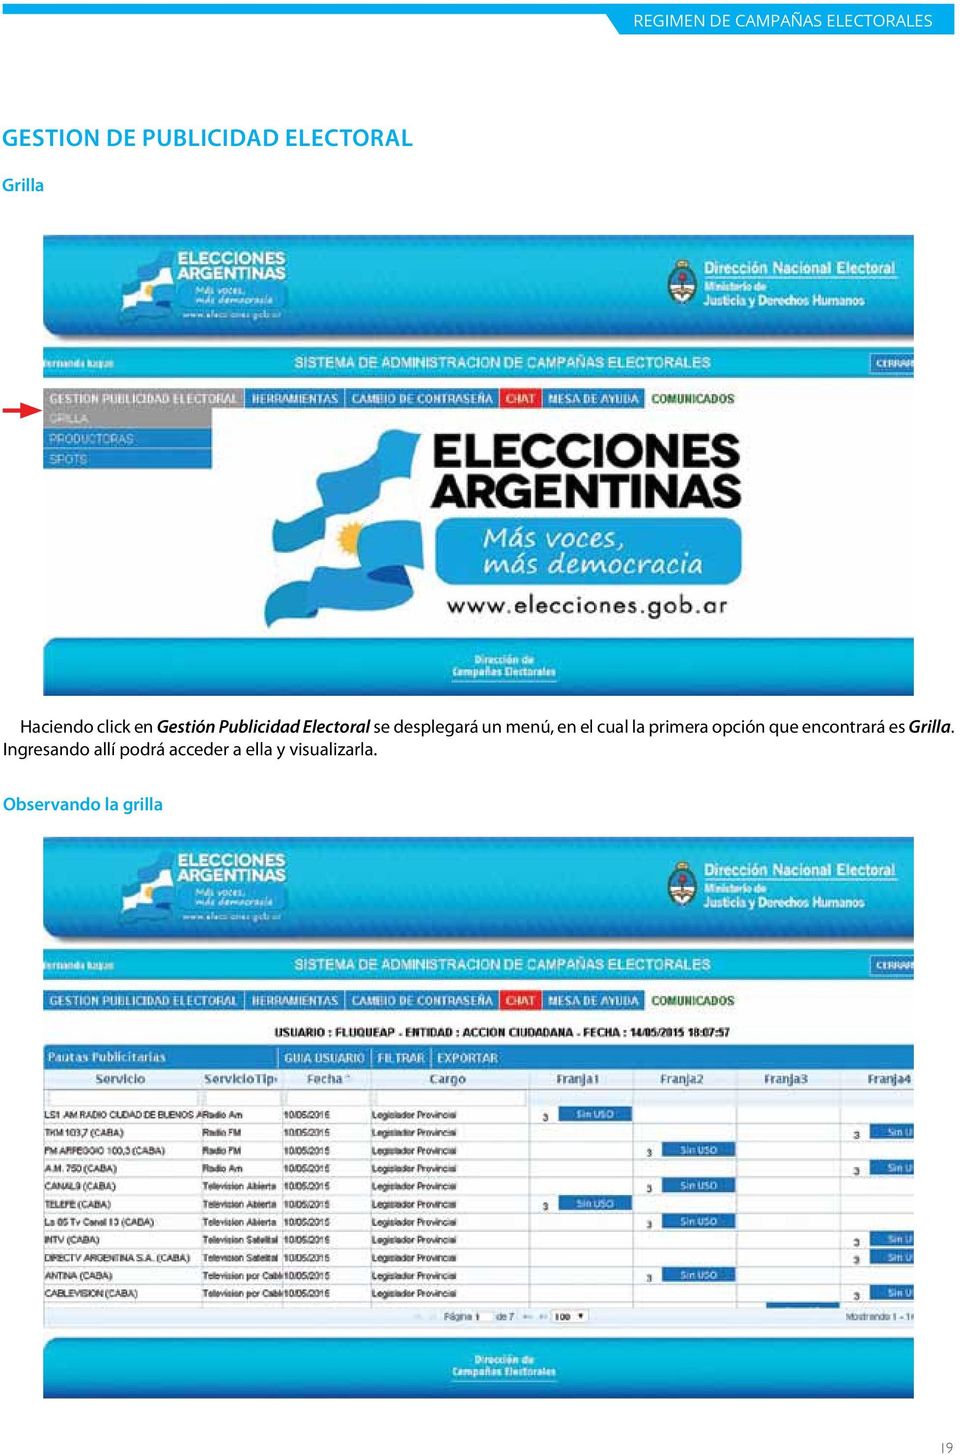 Gestión Publicidad Electoral Grilla.